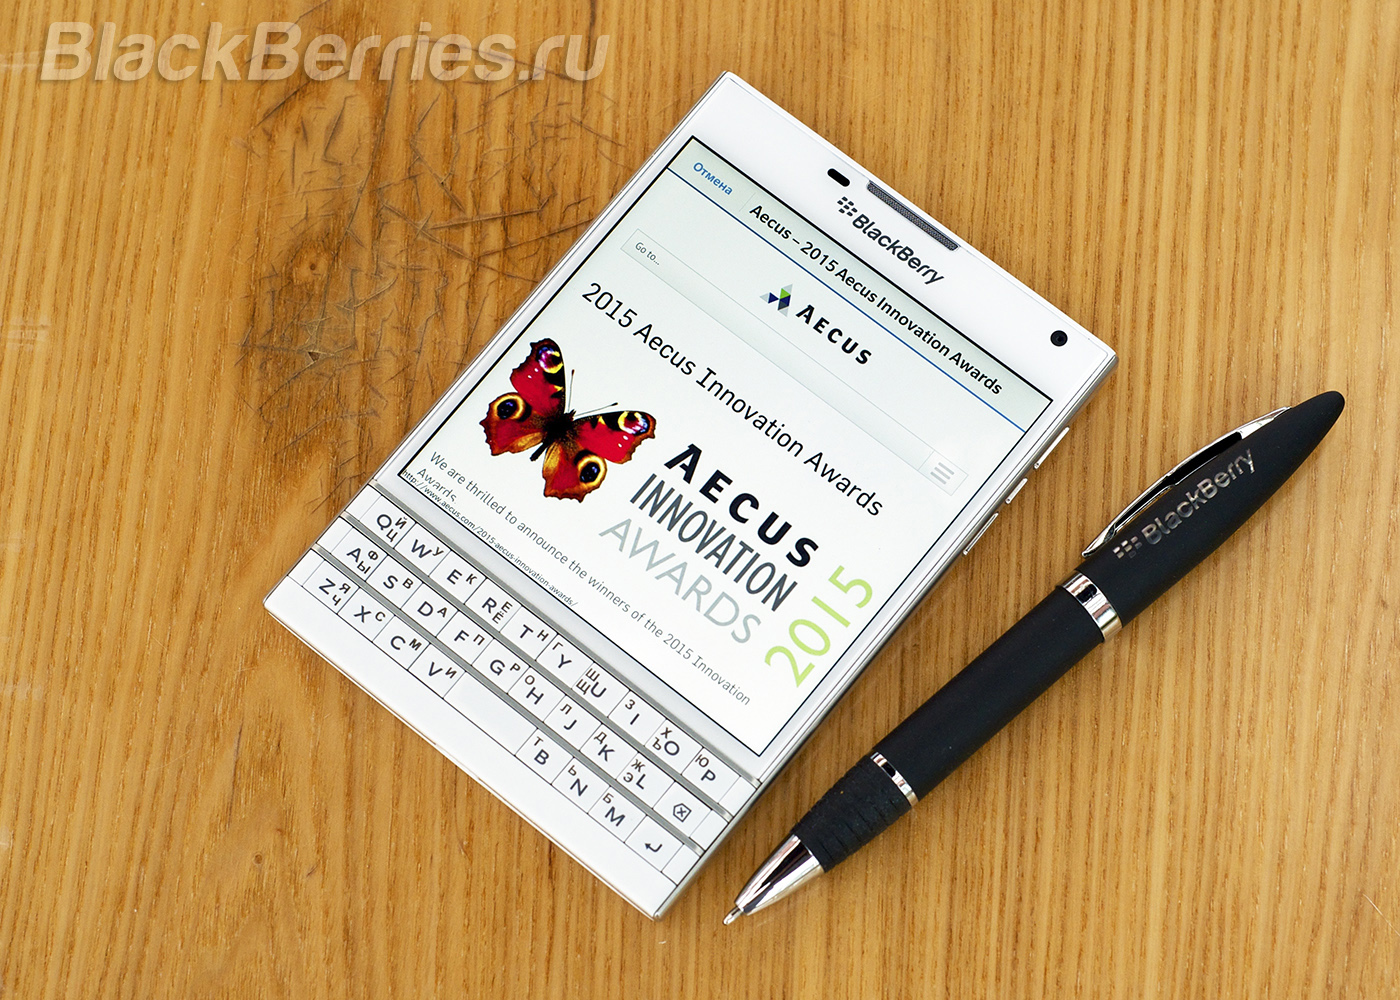 BlackBerry-Passport-App-23-05-04